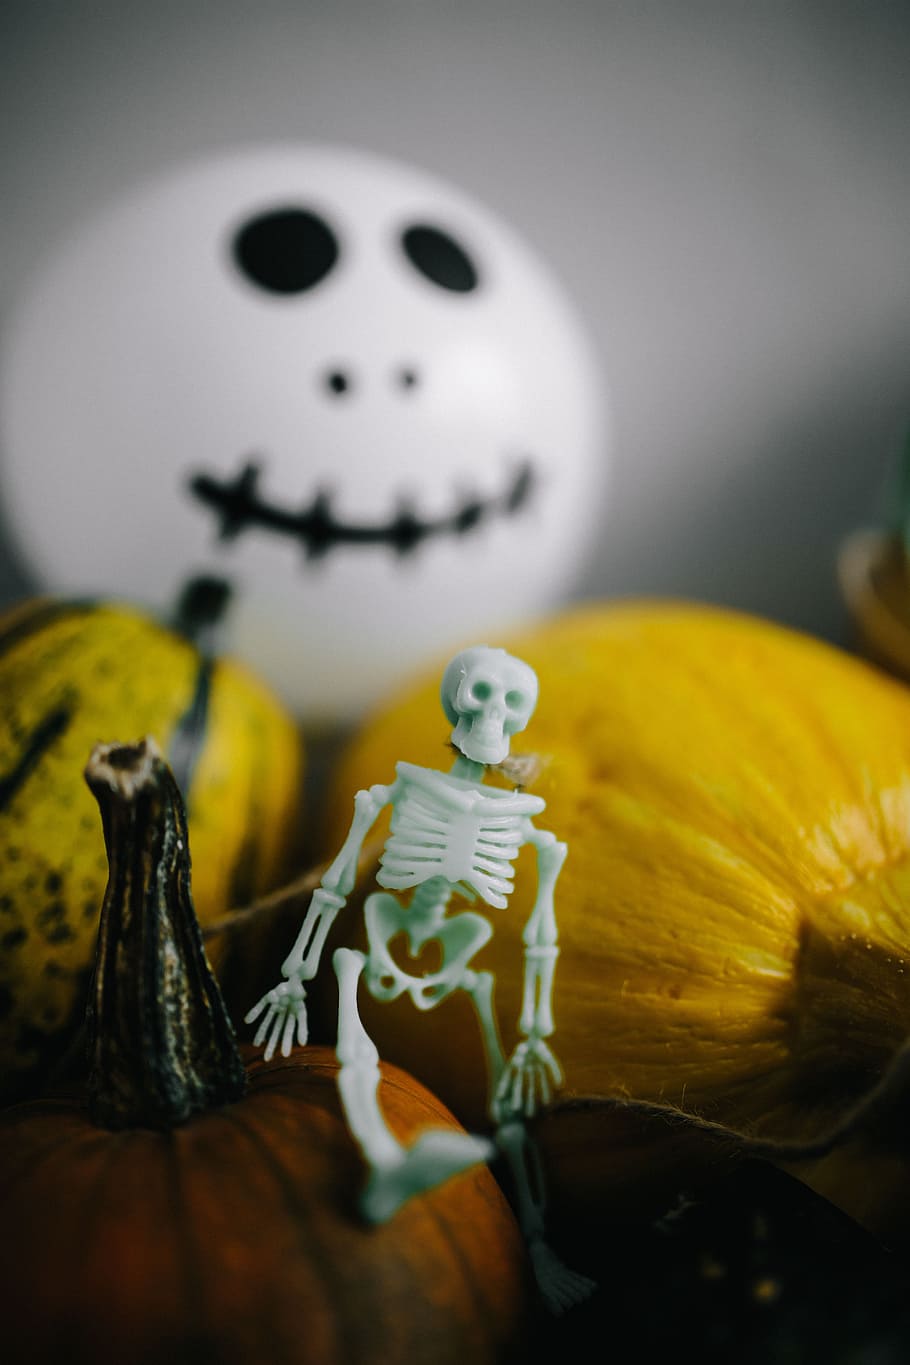 calabazas y halloween, verduras, otoño, calabazas, gracioso, halloween, fantasmas, abucheo, esqueleto humano, esqueleto